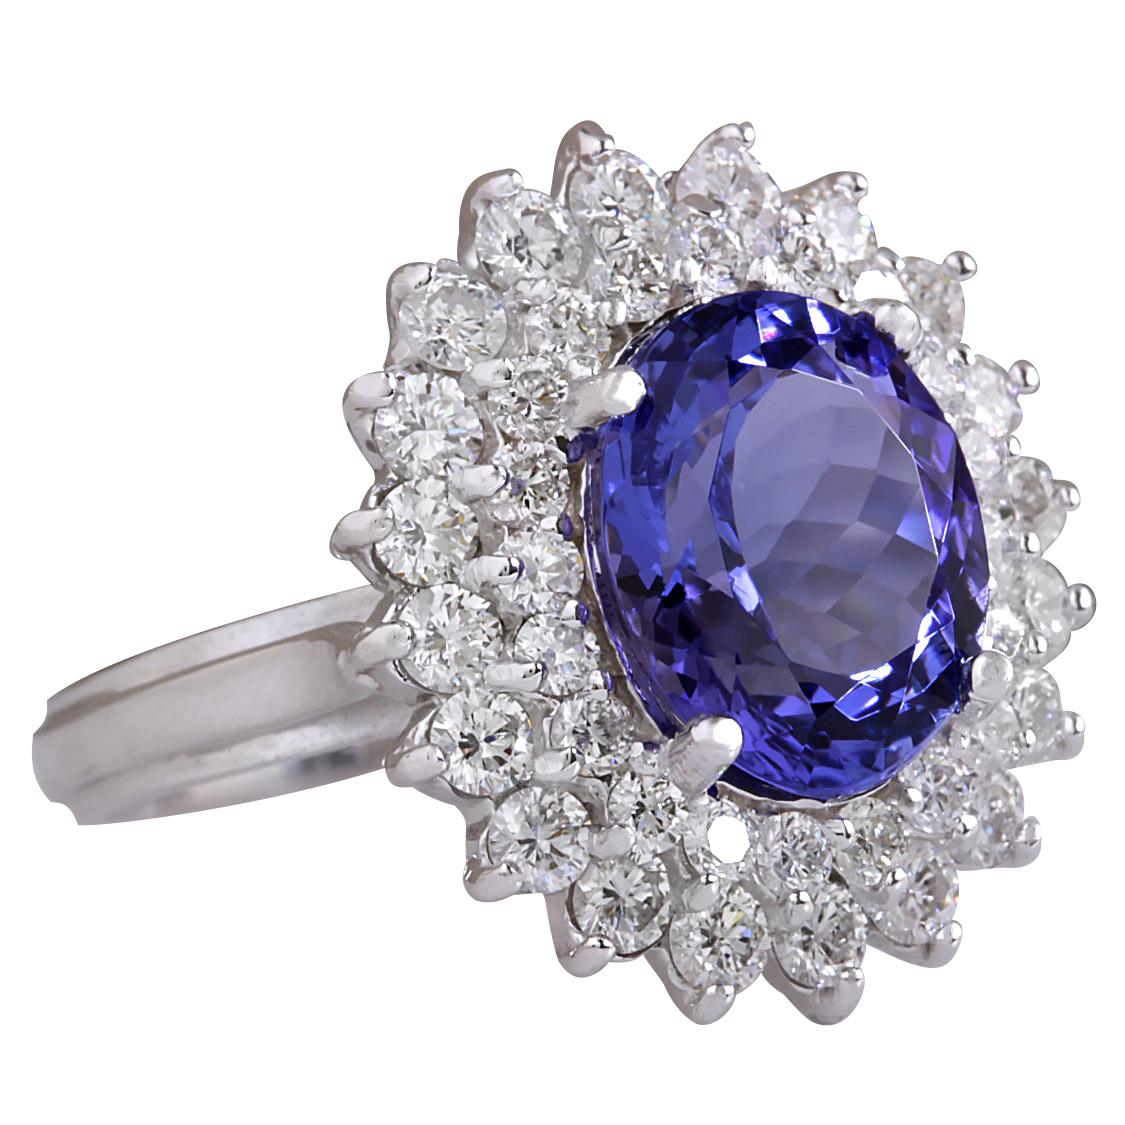 5.27 Carat Natural Tanzanite 14 Karat White Gold Diamond Ring
Stamped: 14K White Gold
Total Ring Weight: 6.5 Grams
Total Natural Tanzanite Weight is 3.82 Carat (Measures: 11.00x9.00 mm)
Color: Blue
Total Natural Diamond Weight is 1.45 Carat
Color: